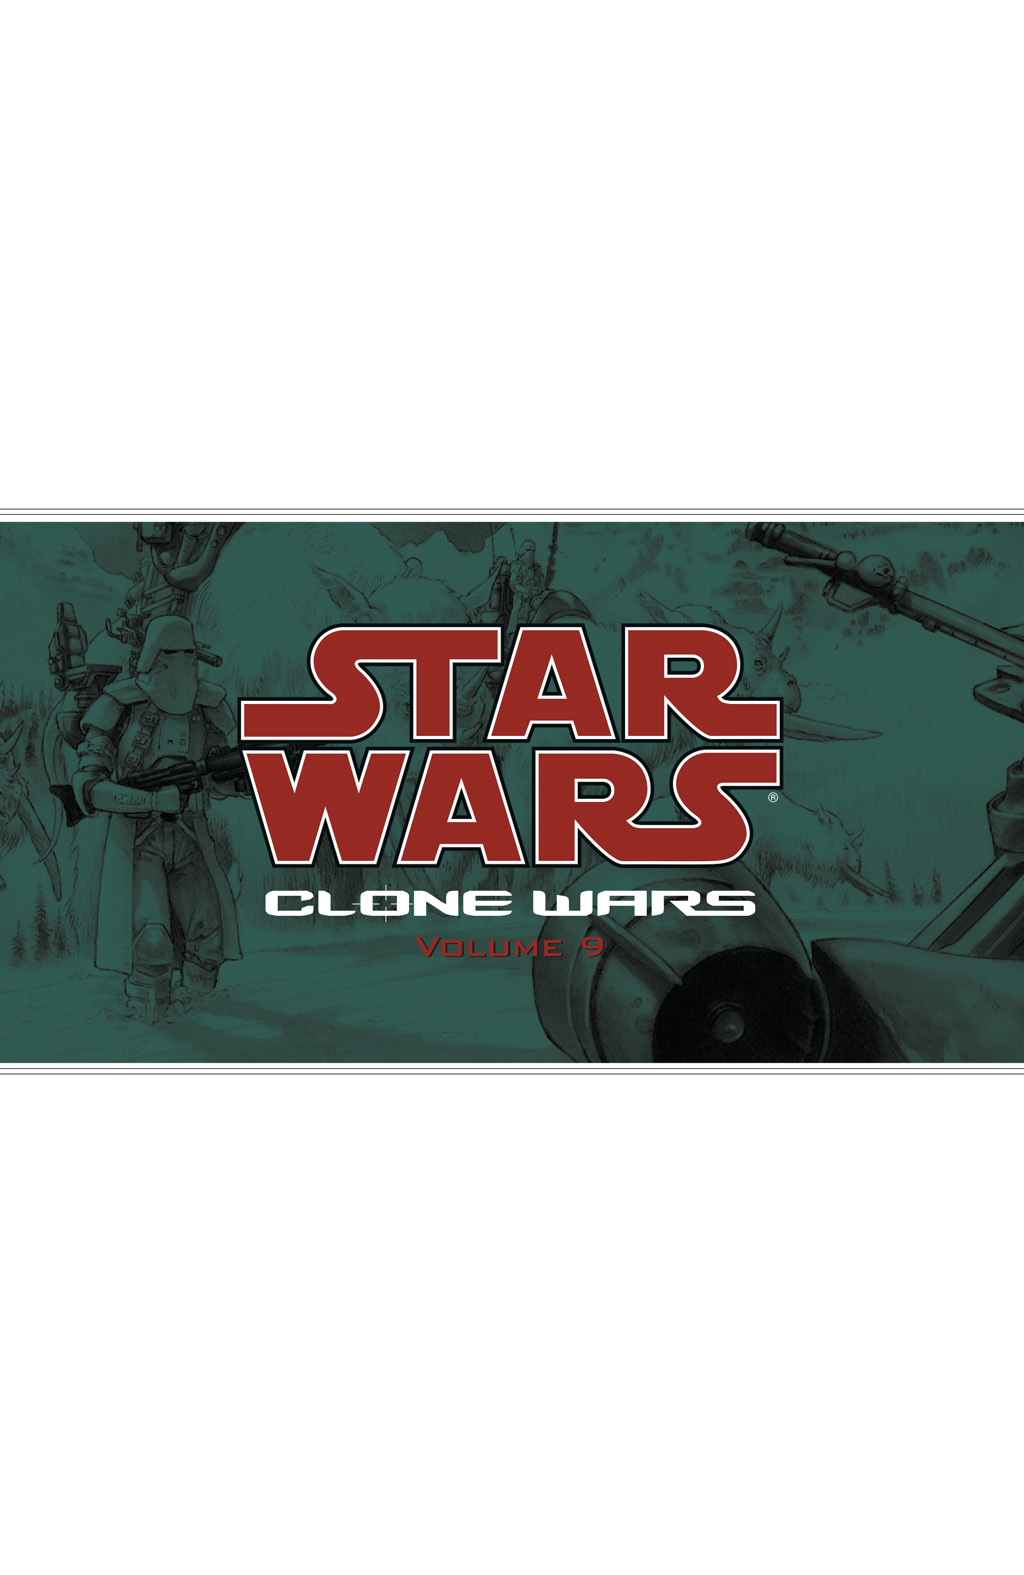 Read online Star Wars: Clone Wars comic -  Issue # TPB 9 - 2